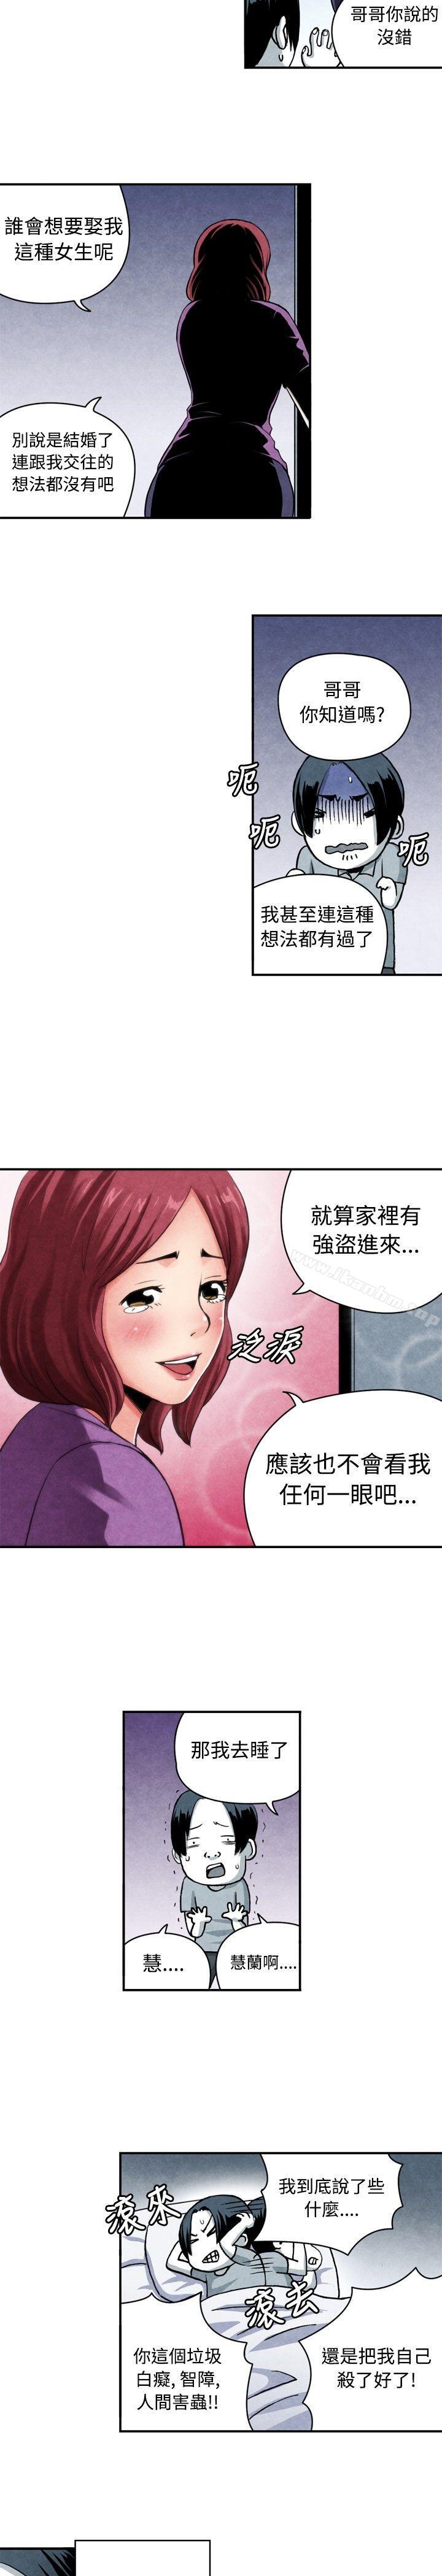 漫画韩国 生物學的女性攻略法   - 立即阅读 生物學的女性攻略法 CASE 06-1. 色情狂&窺淫癥少女第7漫画图片